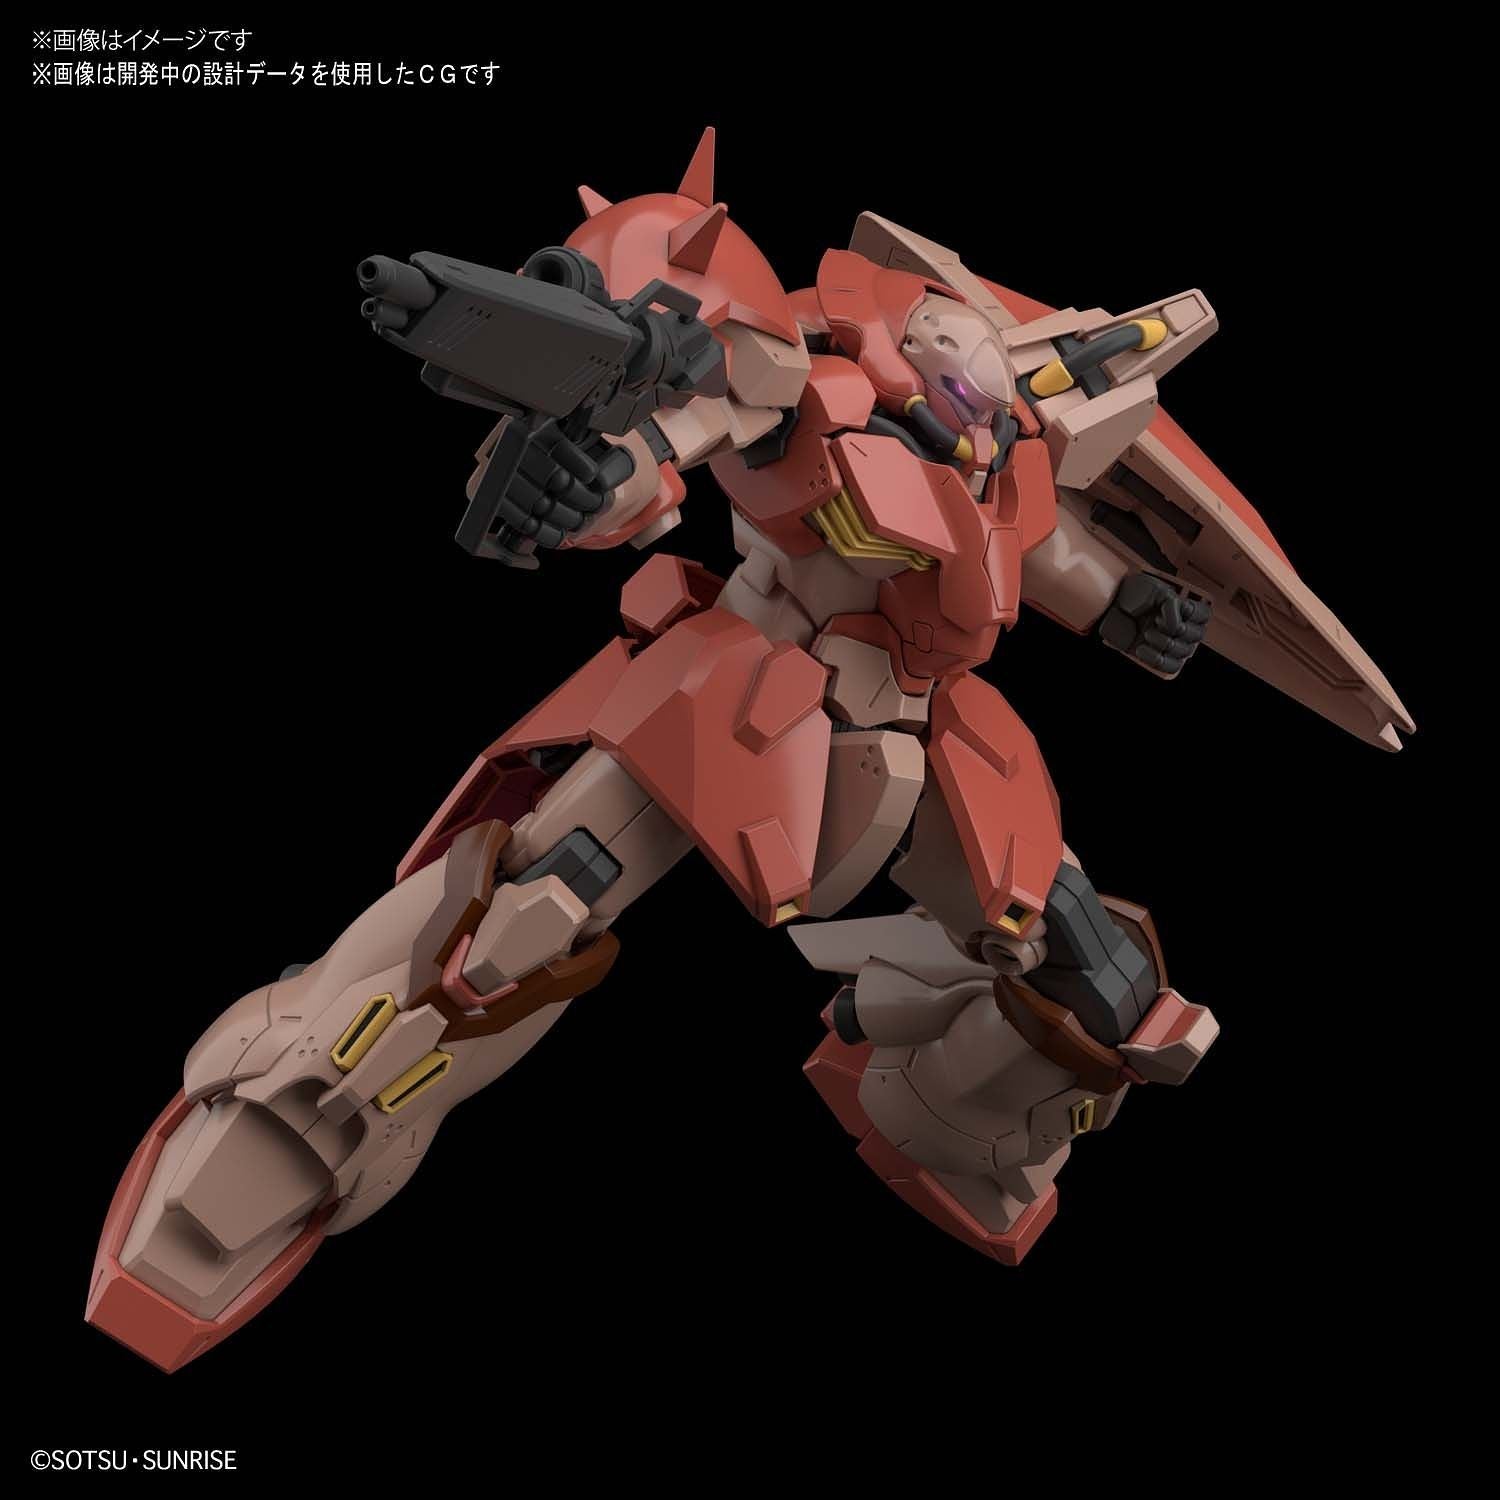 HG Gundam - Messer 1/144 - gundam-store.dk